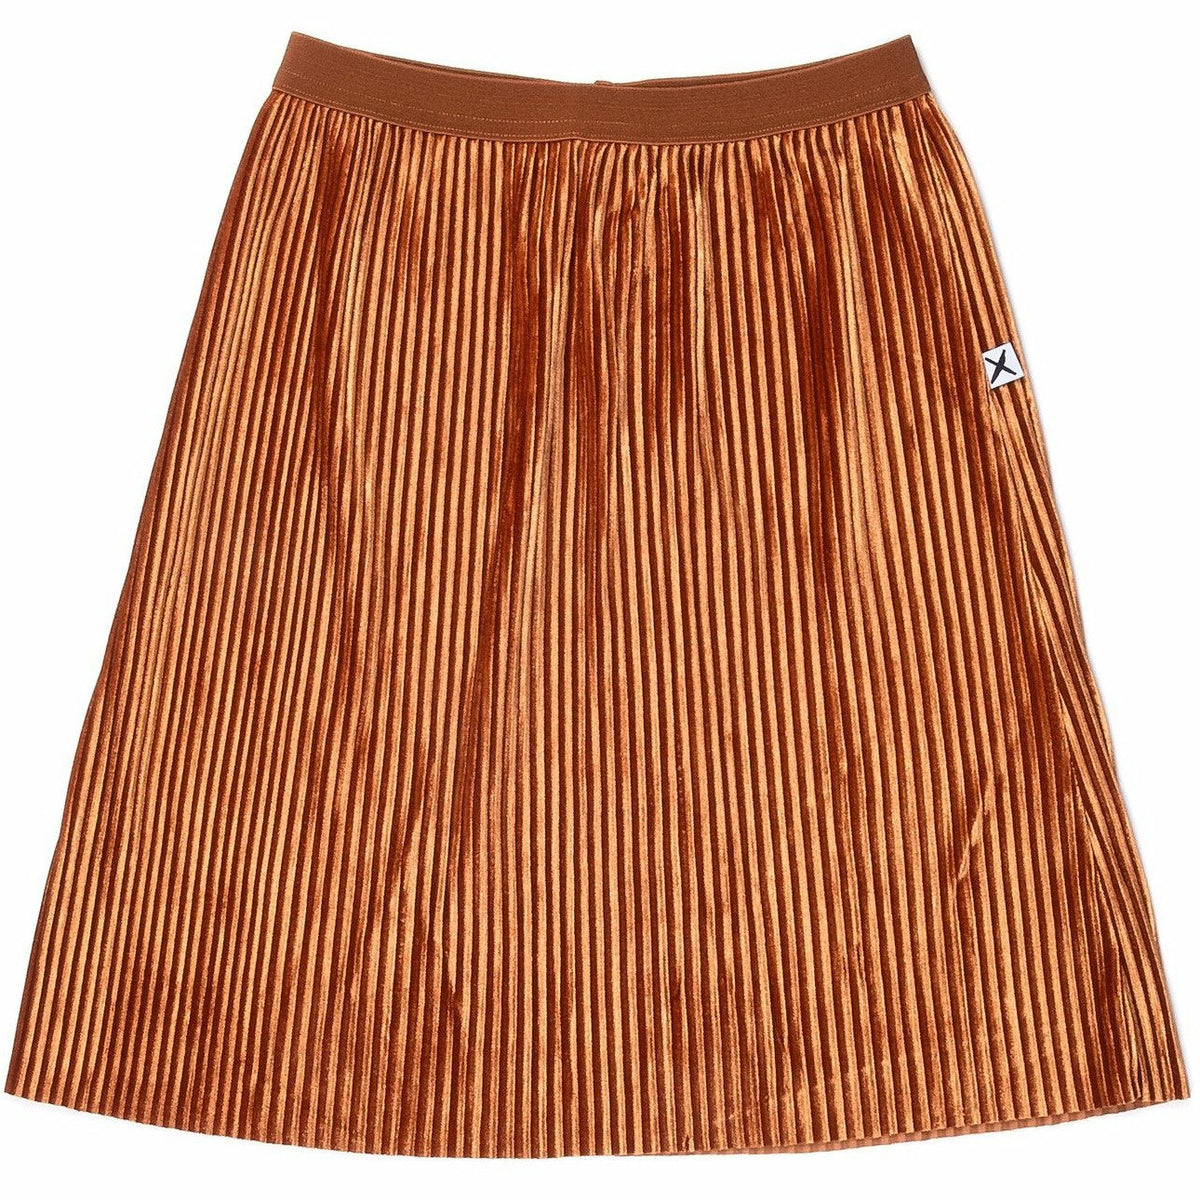 Wintery Cord Skirt - Bronze